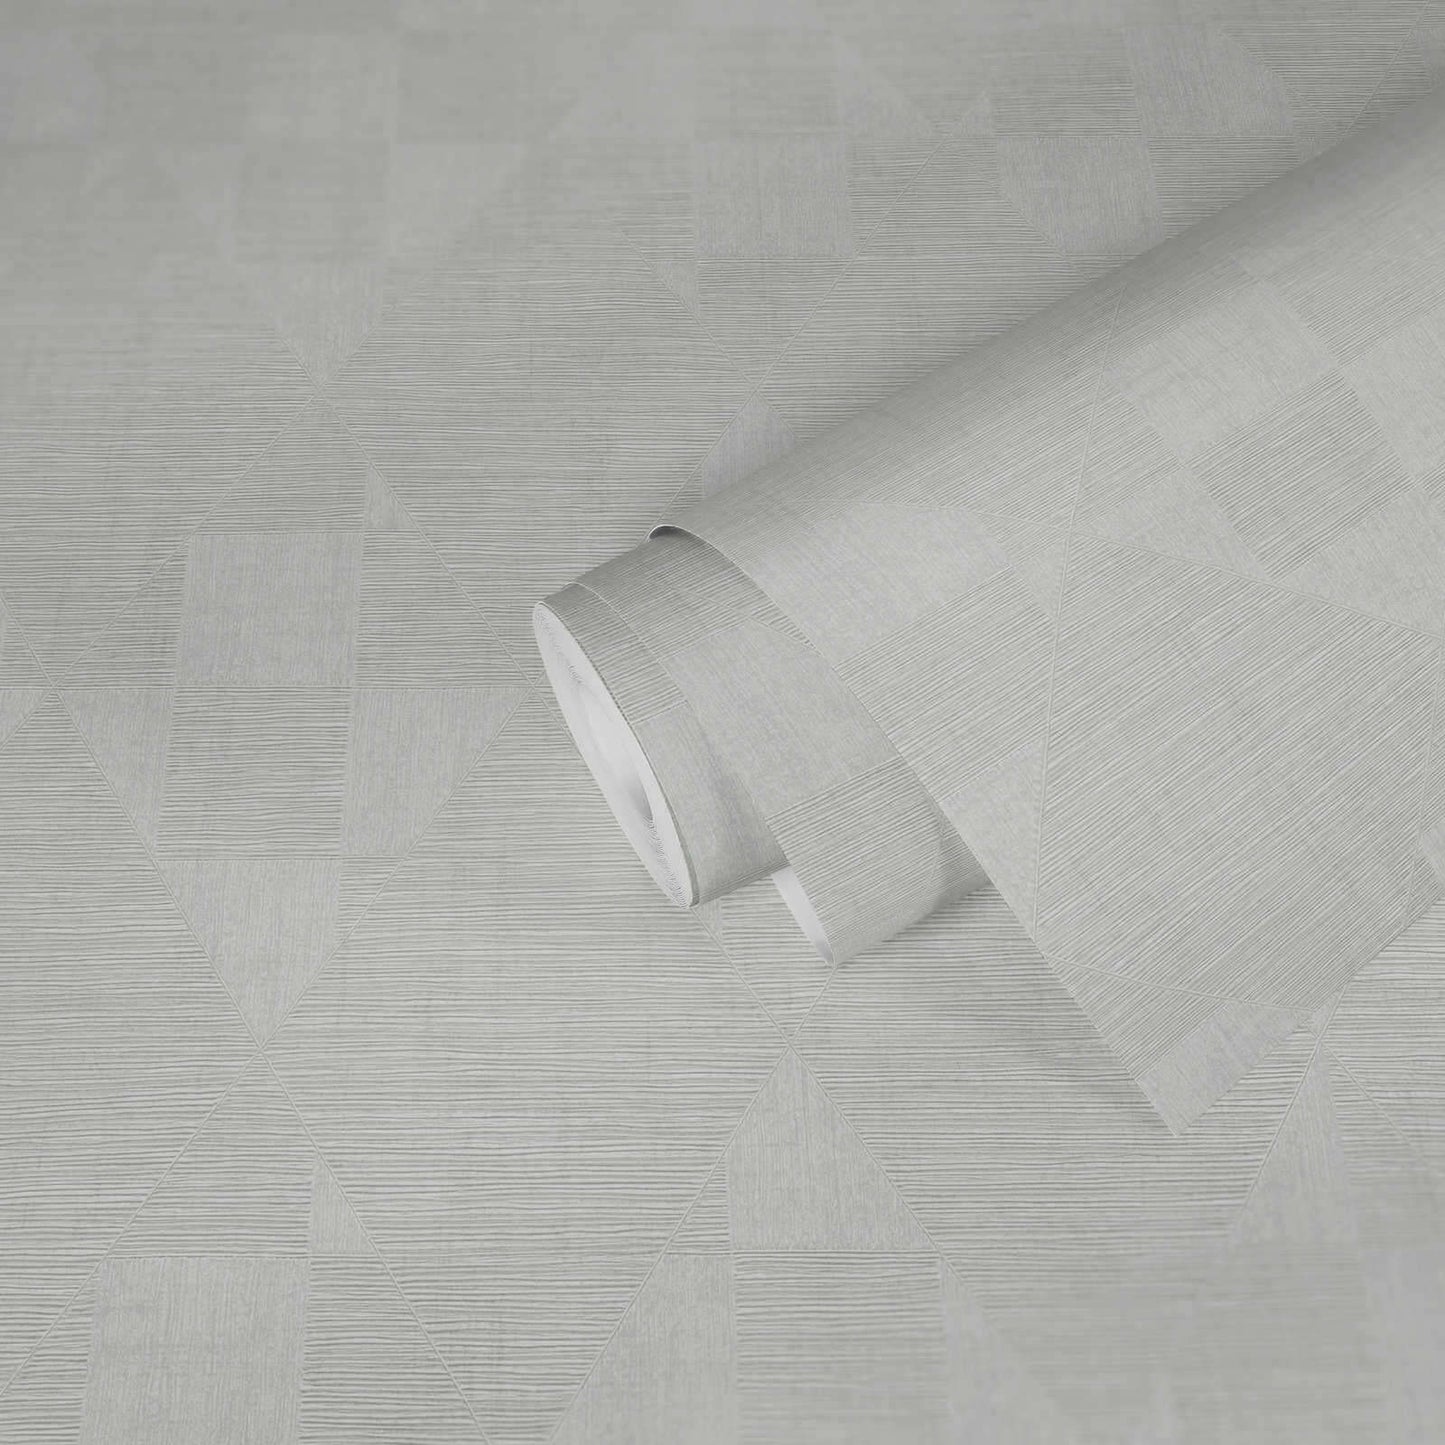 Wallpaper  -  AS Creation Titanium 3D Diamond Light Grey Wallpaper - 381963  -  60001872